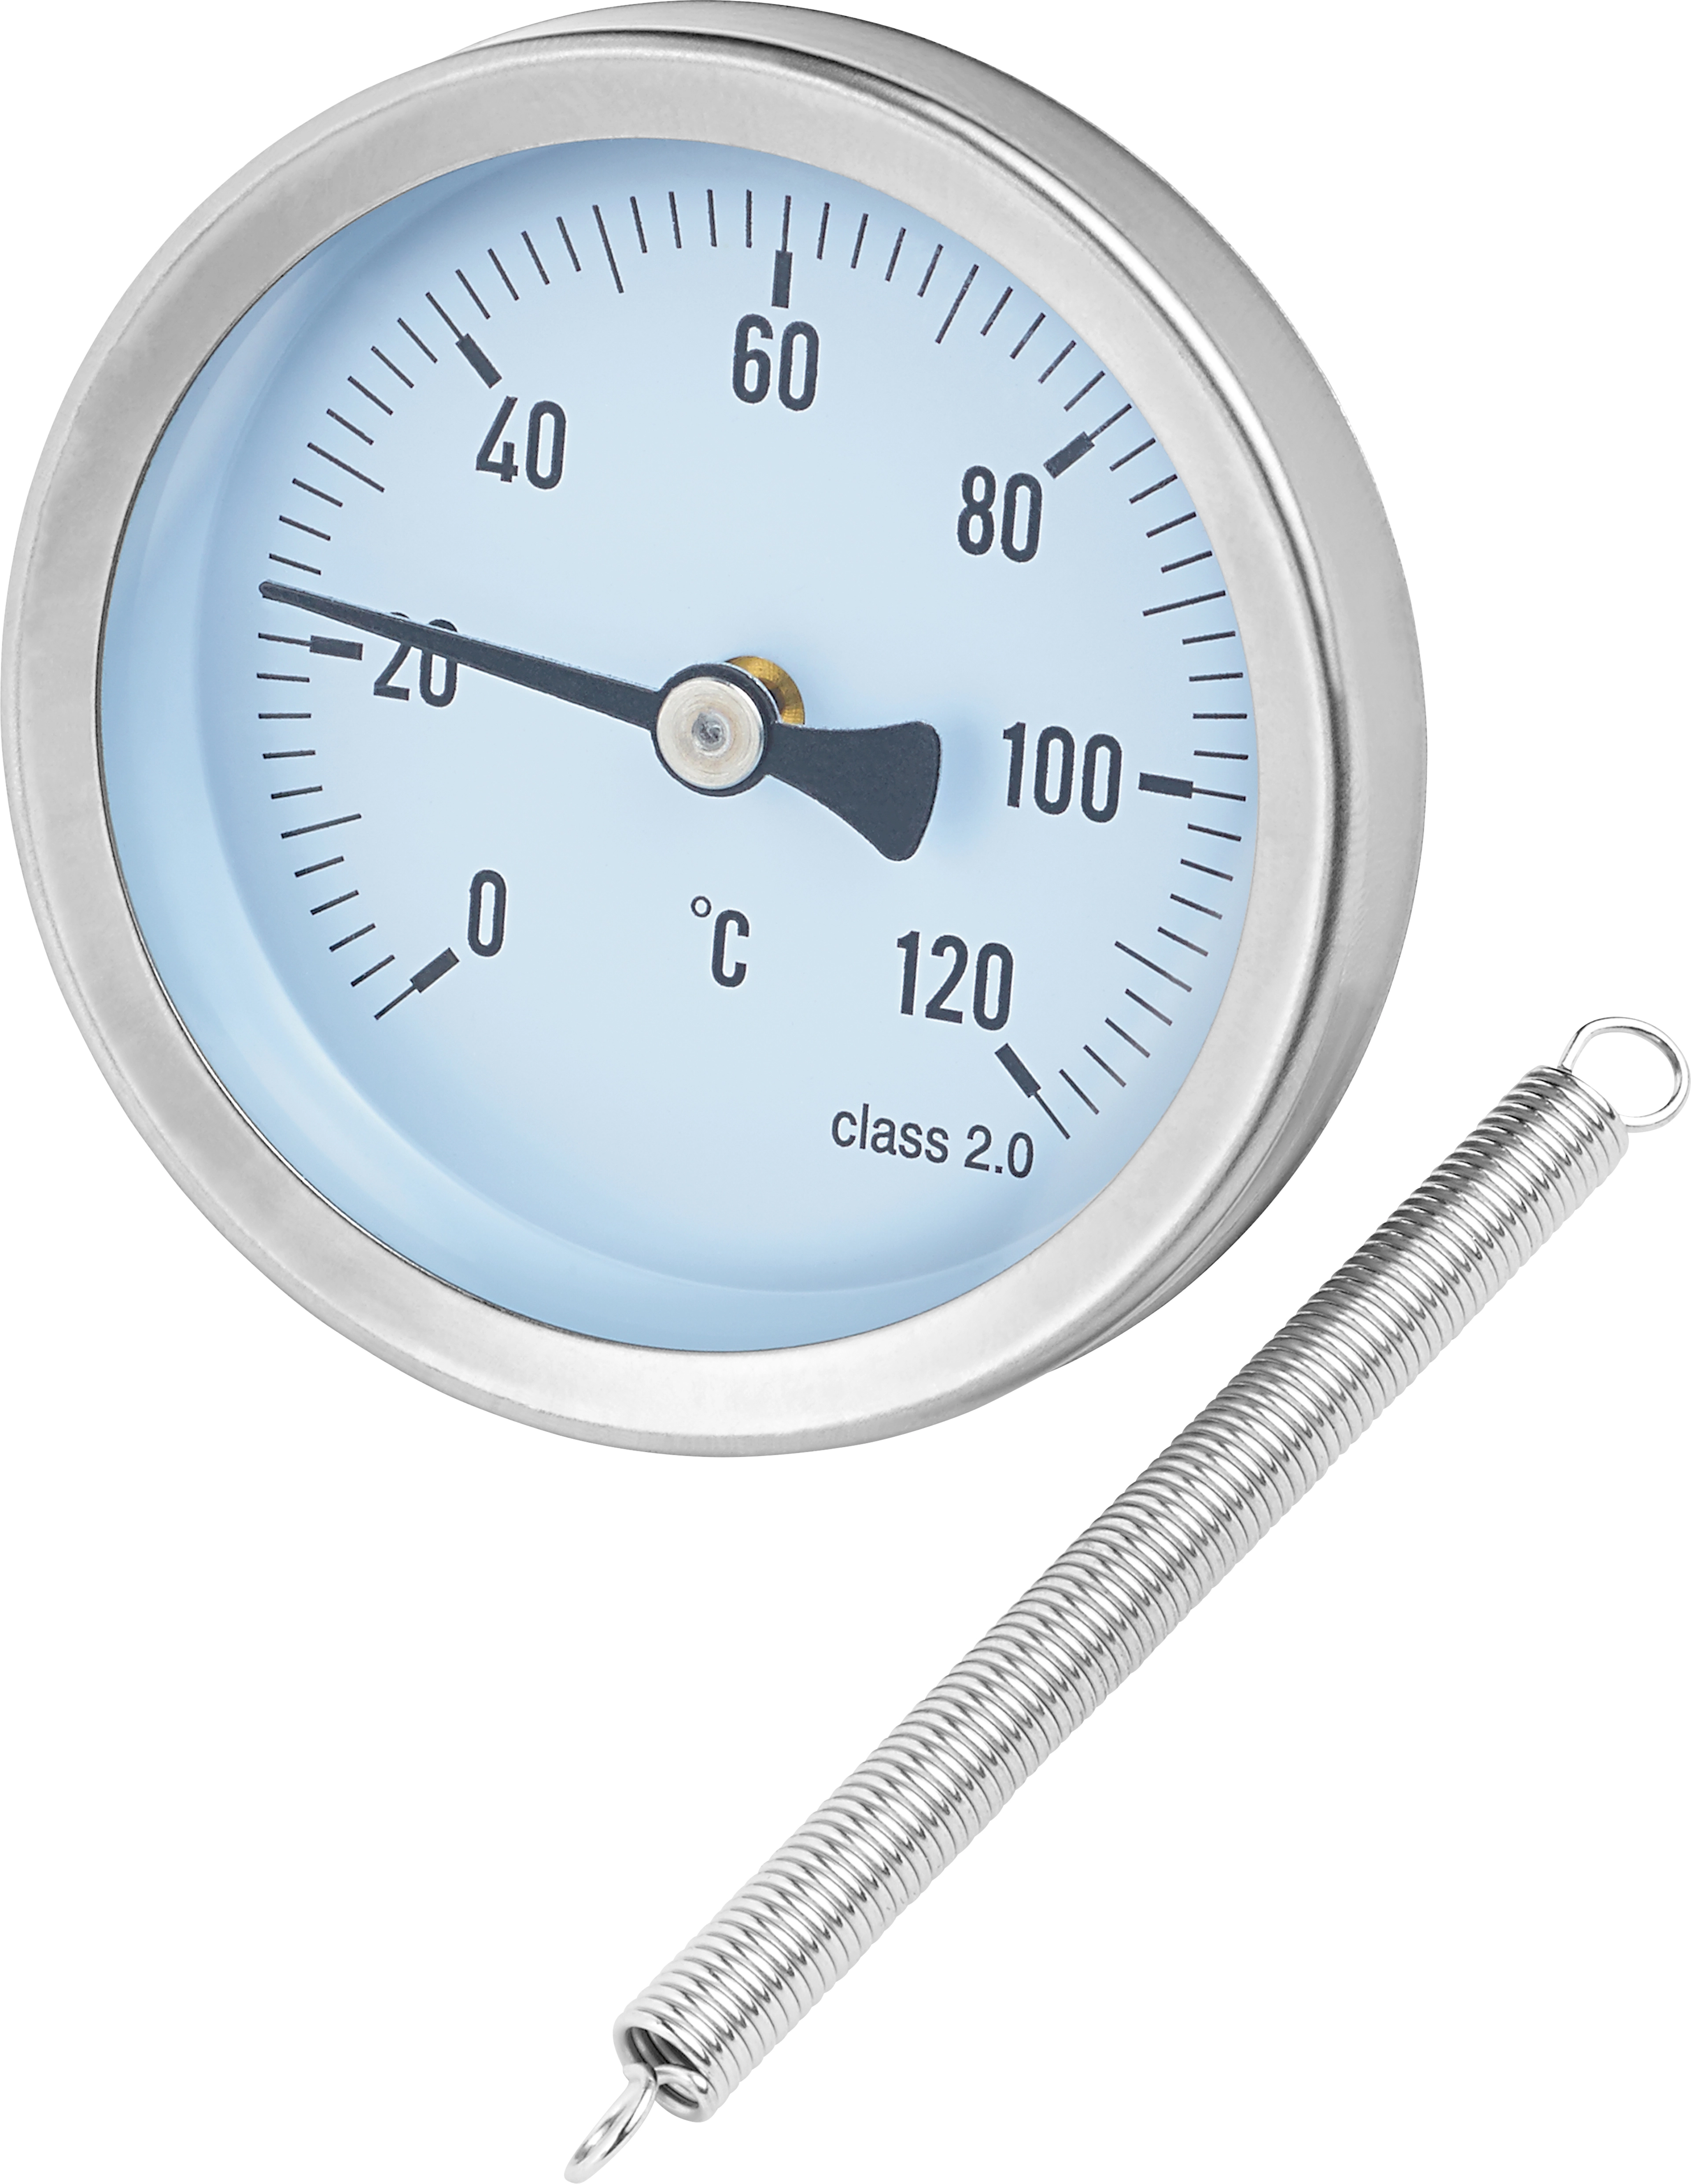 Anlege-Zeigethermometer 120 °C kaufen bei OBI